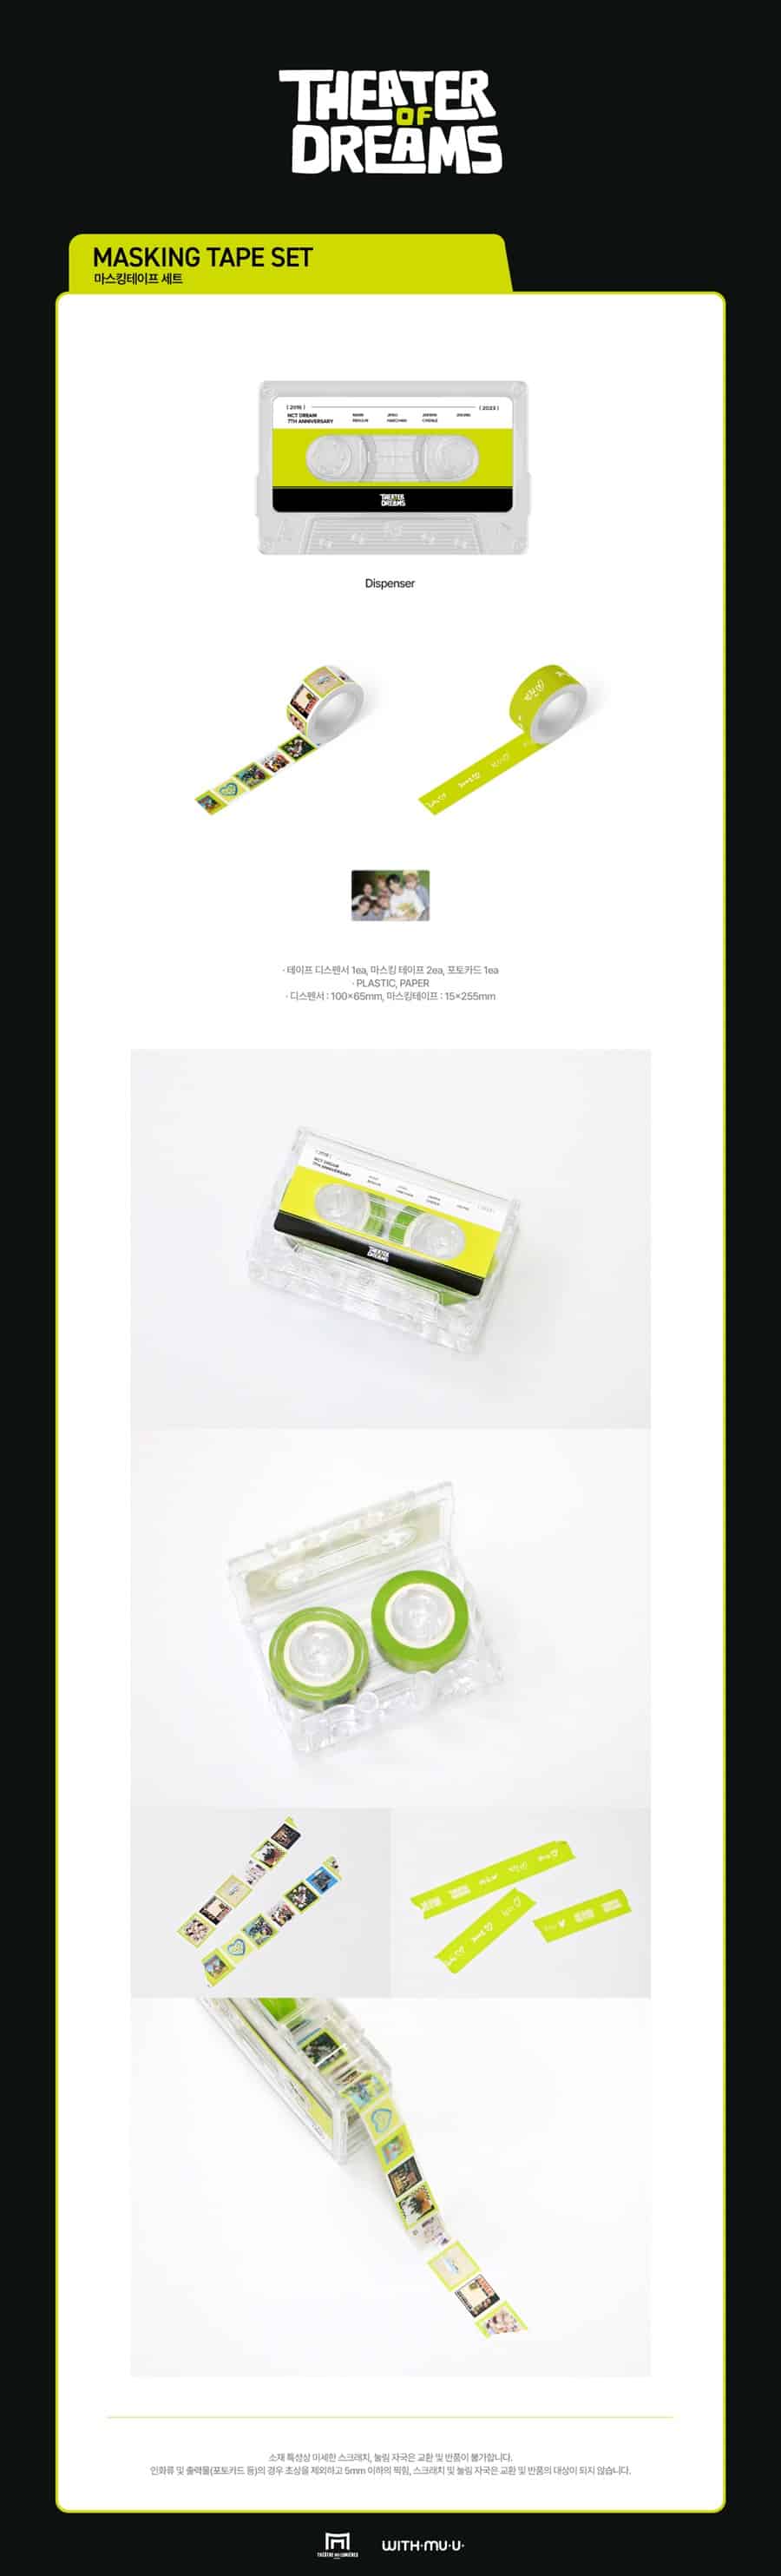 nct-dream-06-masking-tape-set